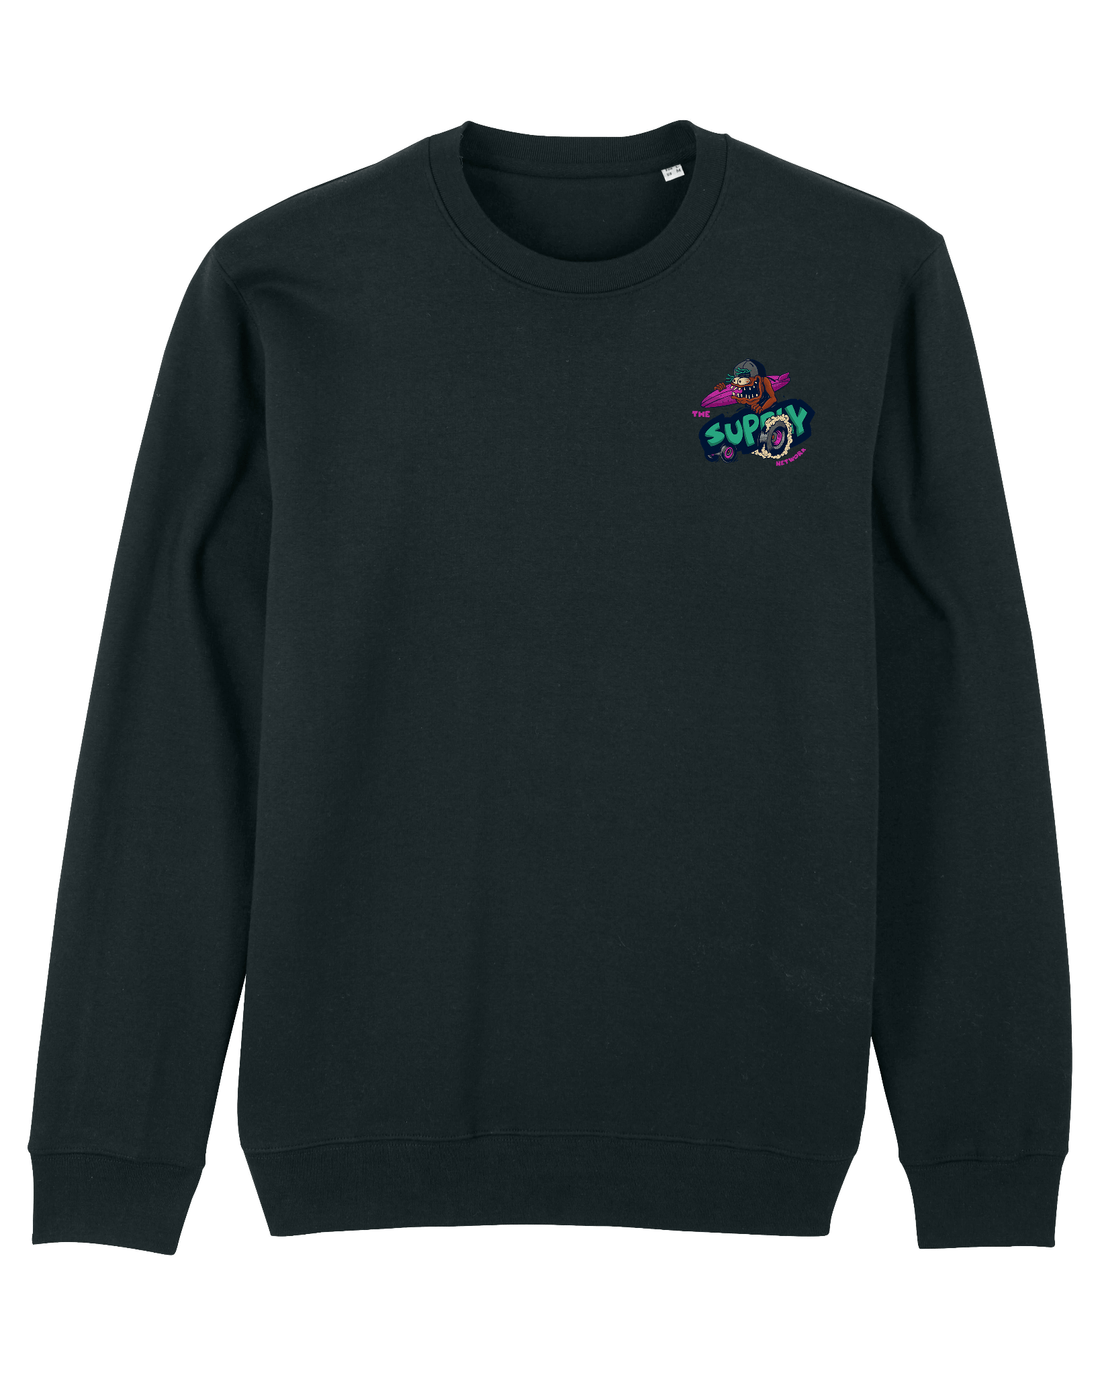 Black Skater Sweatshirt, Lets Go Surf Front Print